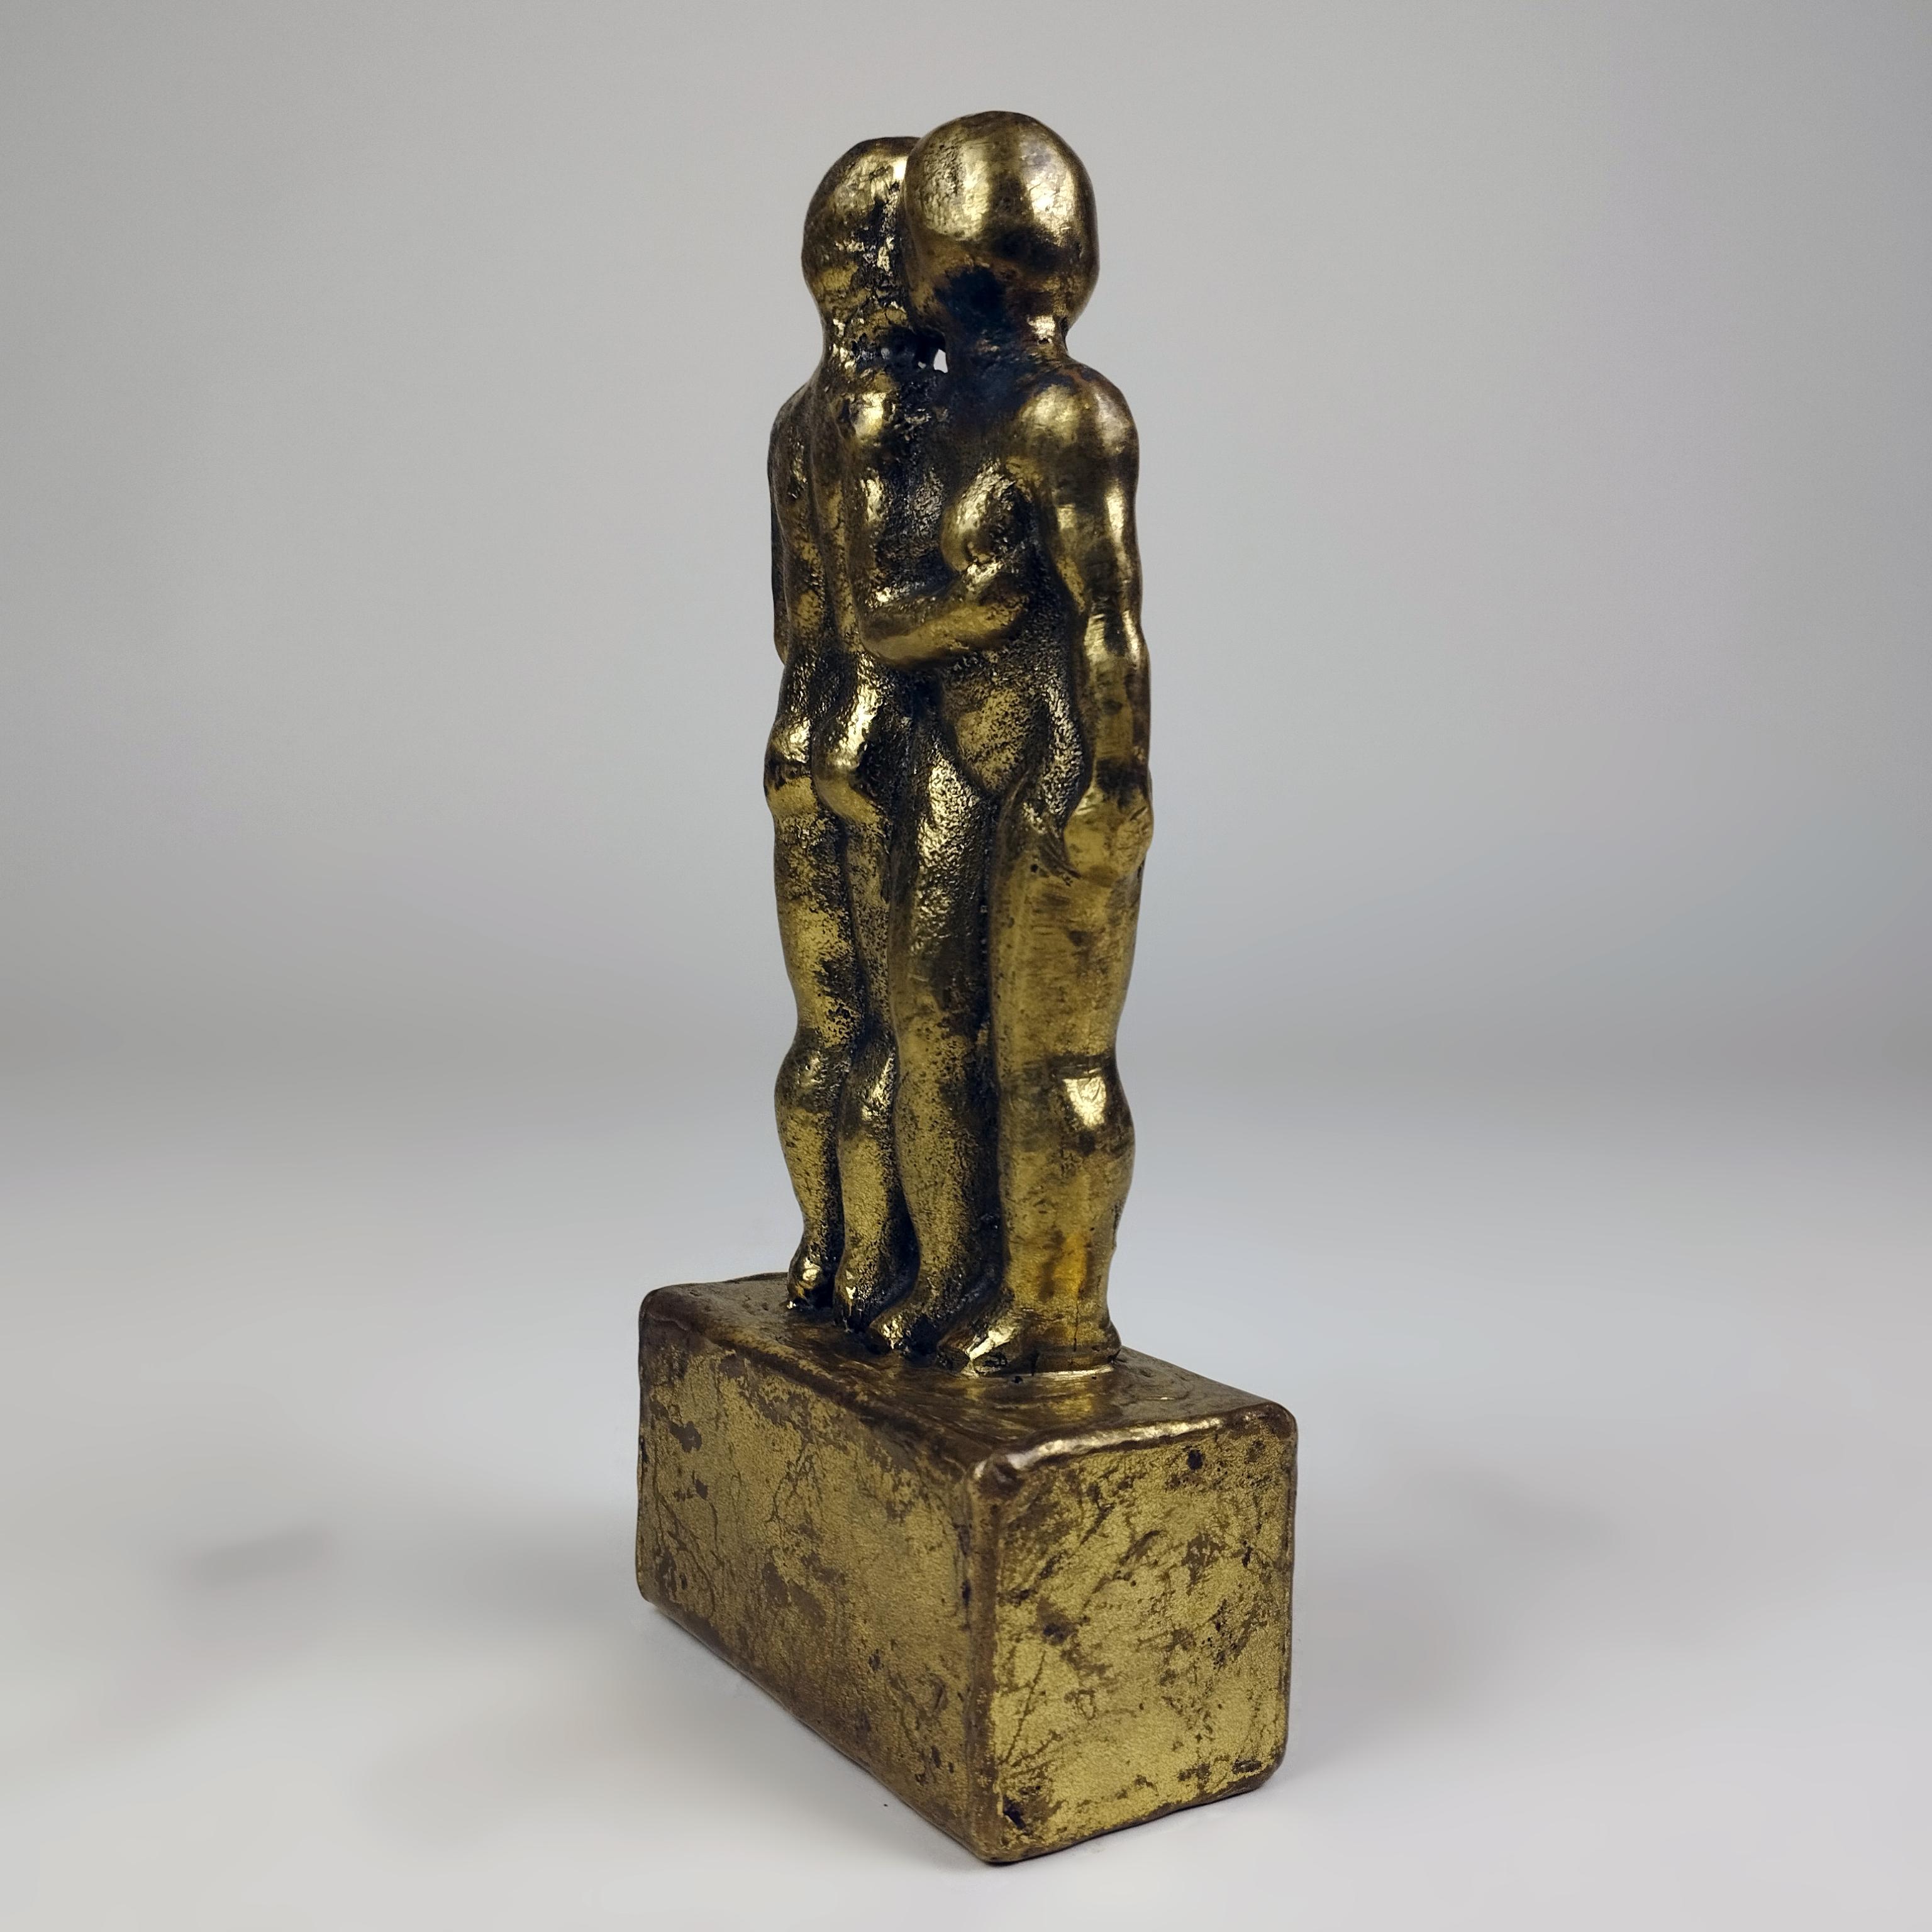 Sculpture brutaliste en bronze coulé avec une base en acier doré représentant un couple qui s'embrasse, réalisée par l'artiste mexicain d'origine hongroise Pal Kepenyes. La sculpture est signée sur l'un des côtés de la base.

Sculpteur hongrois